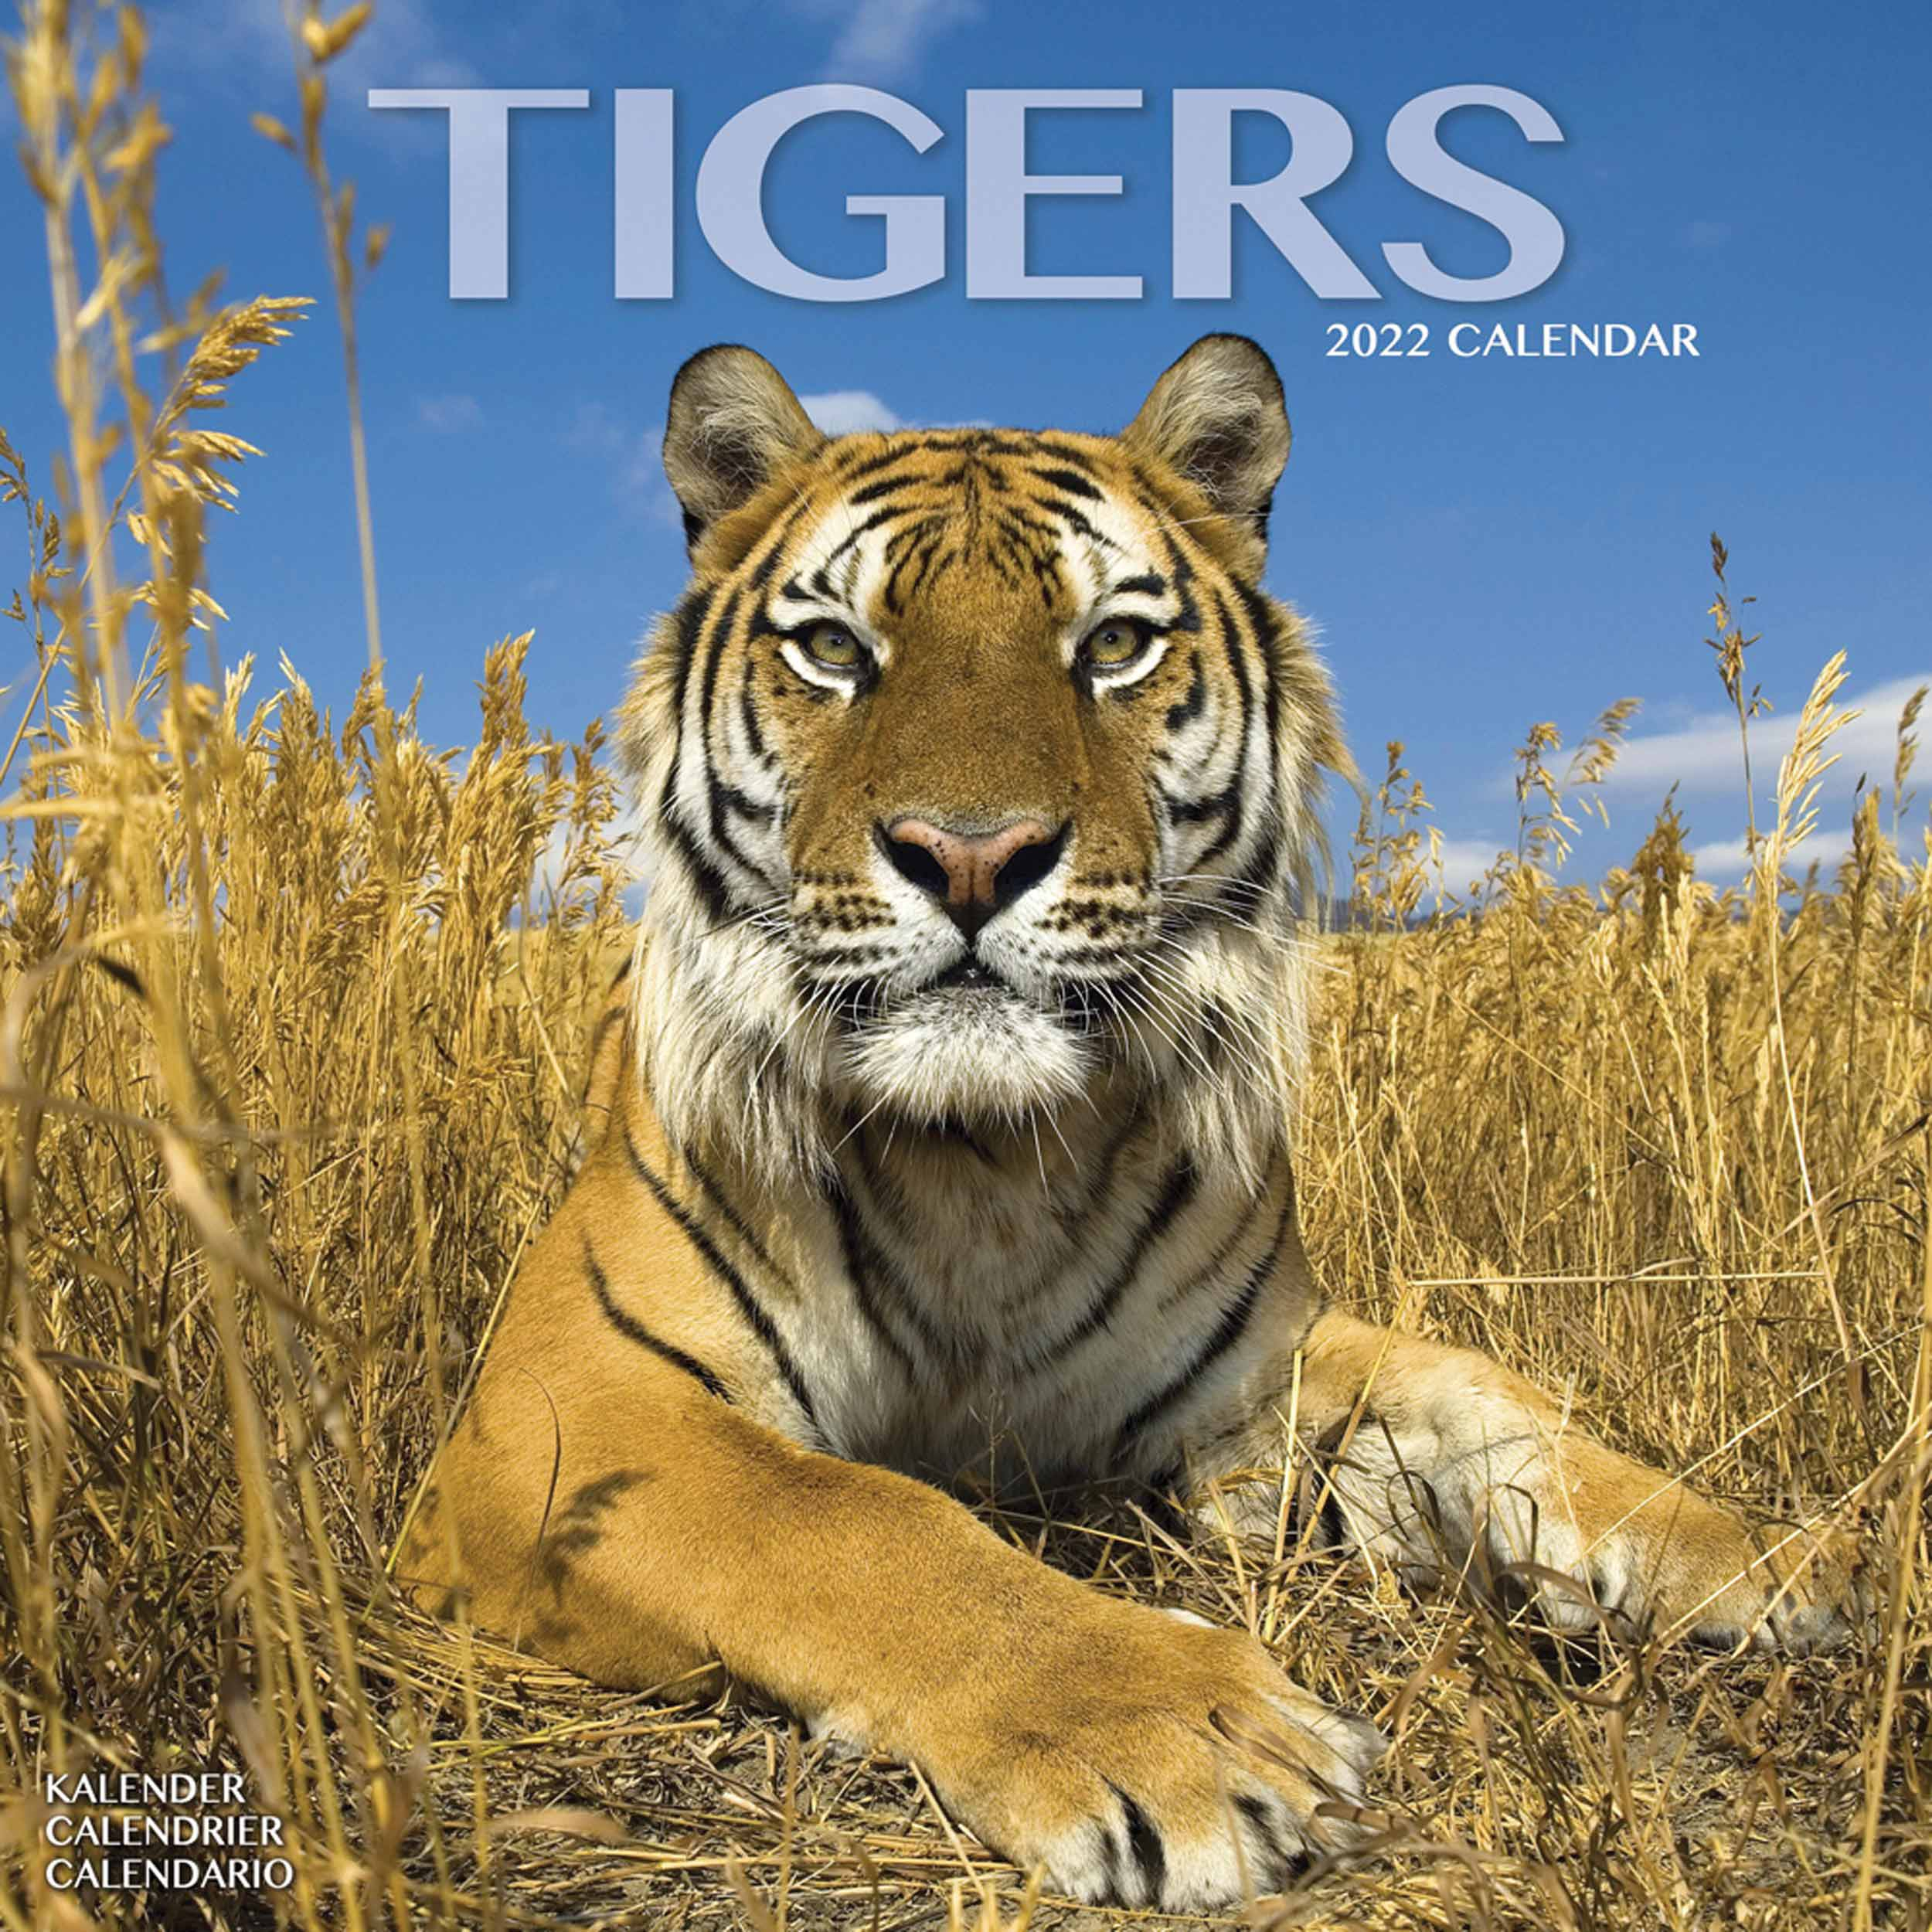 Tigers Calendar 2022 At Calendar Club